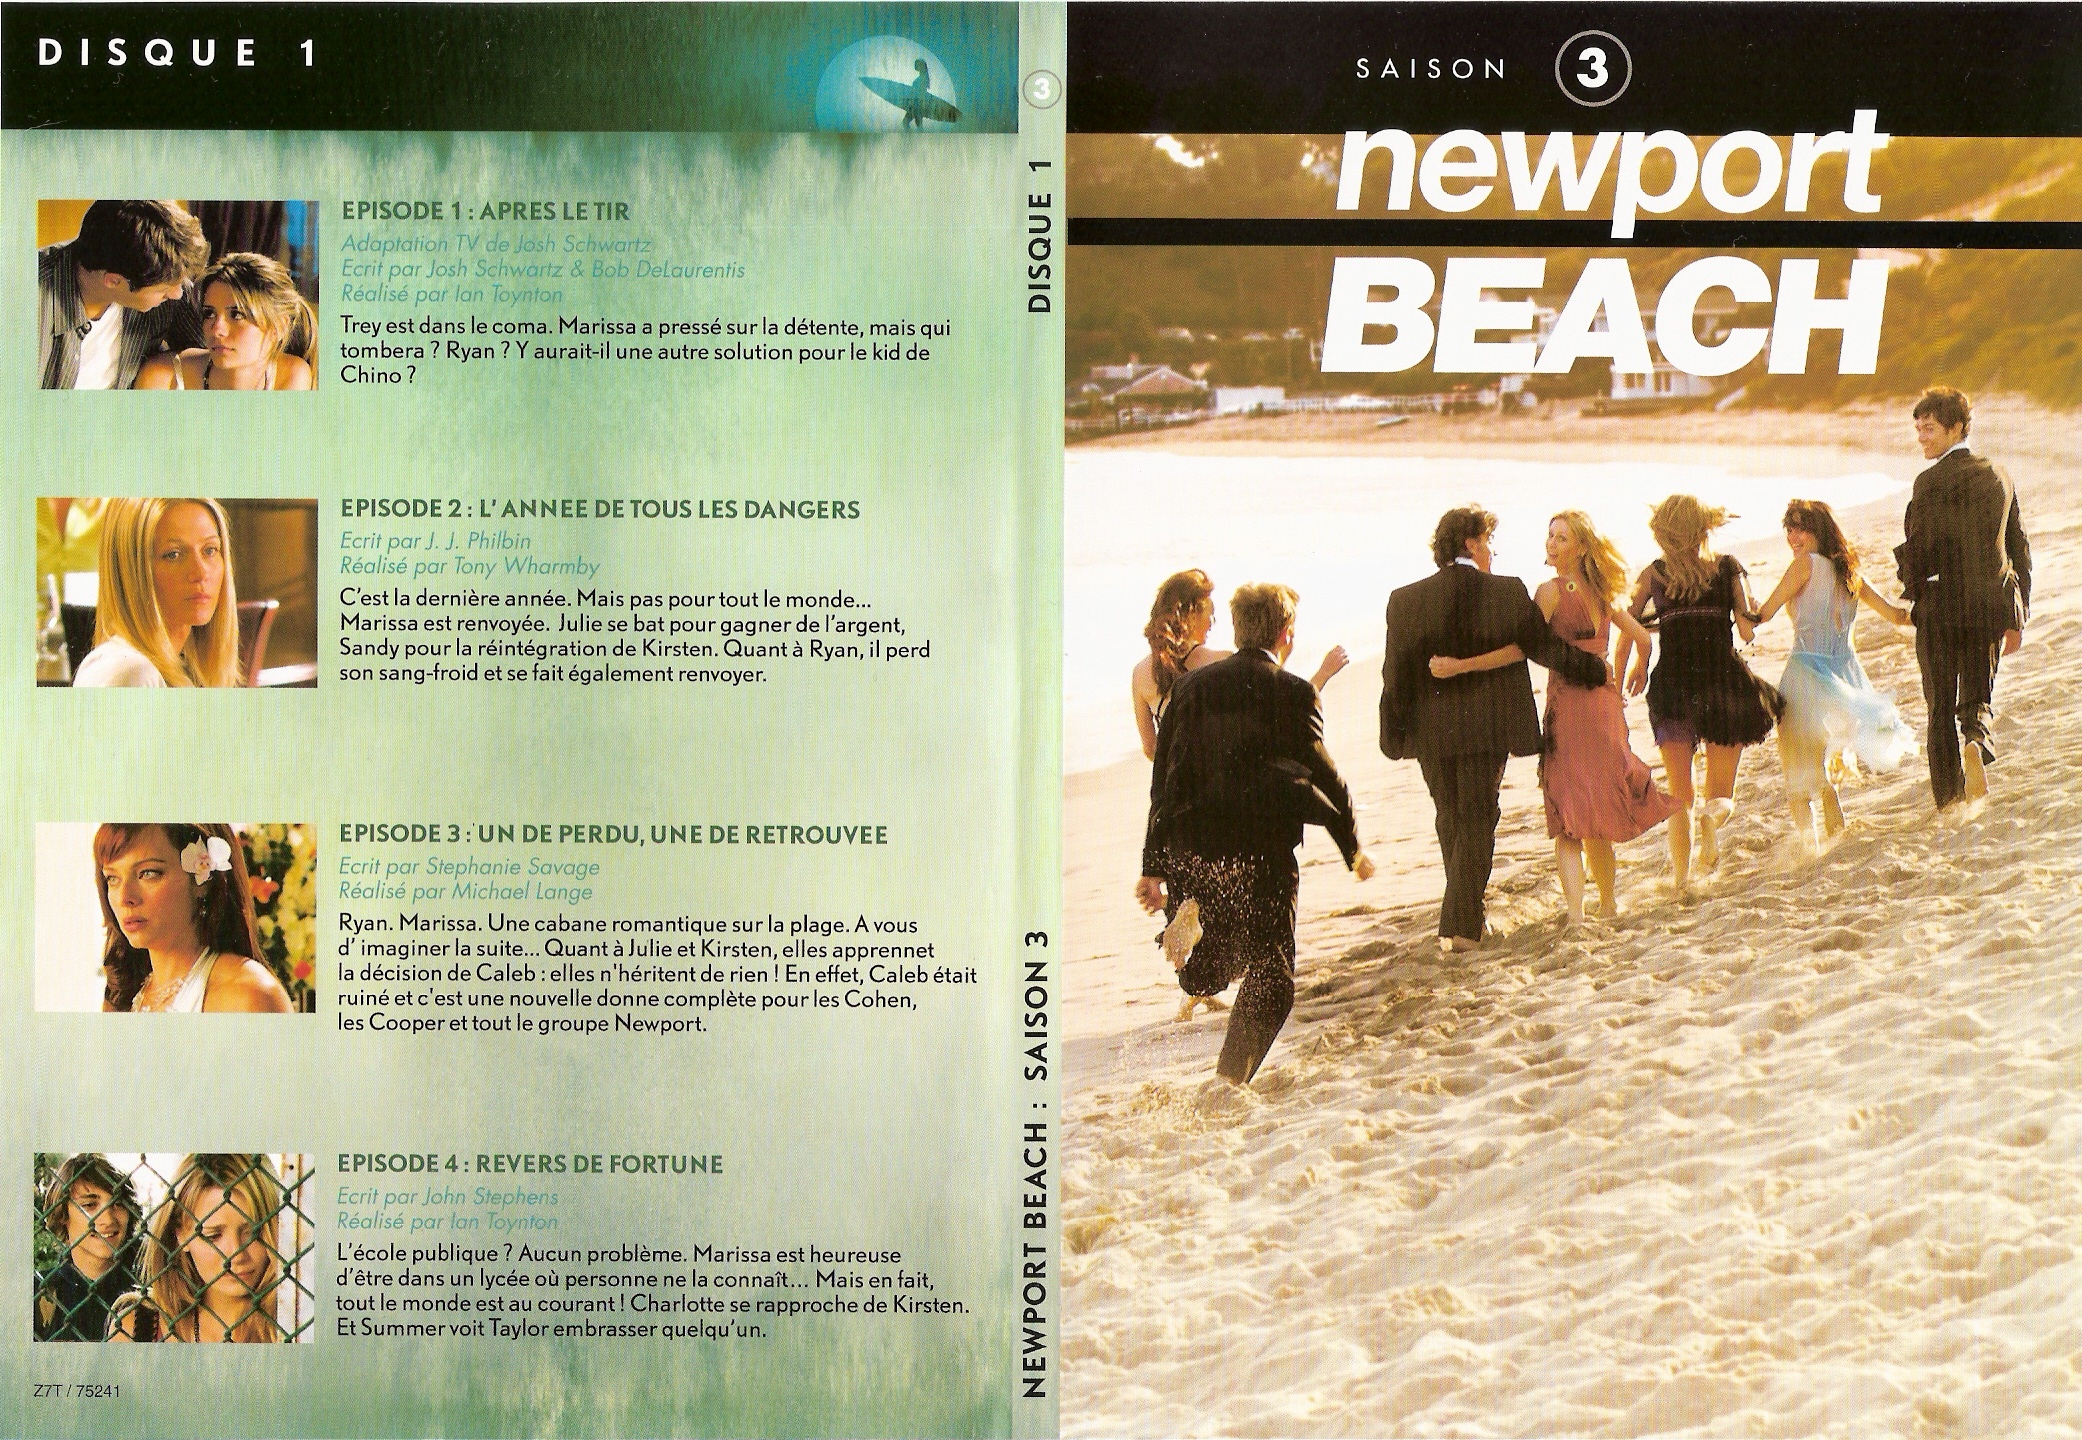 Jaquette DVD Newport Beach saison 3 vol 1